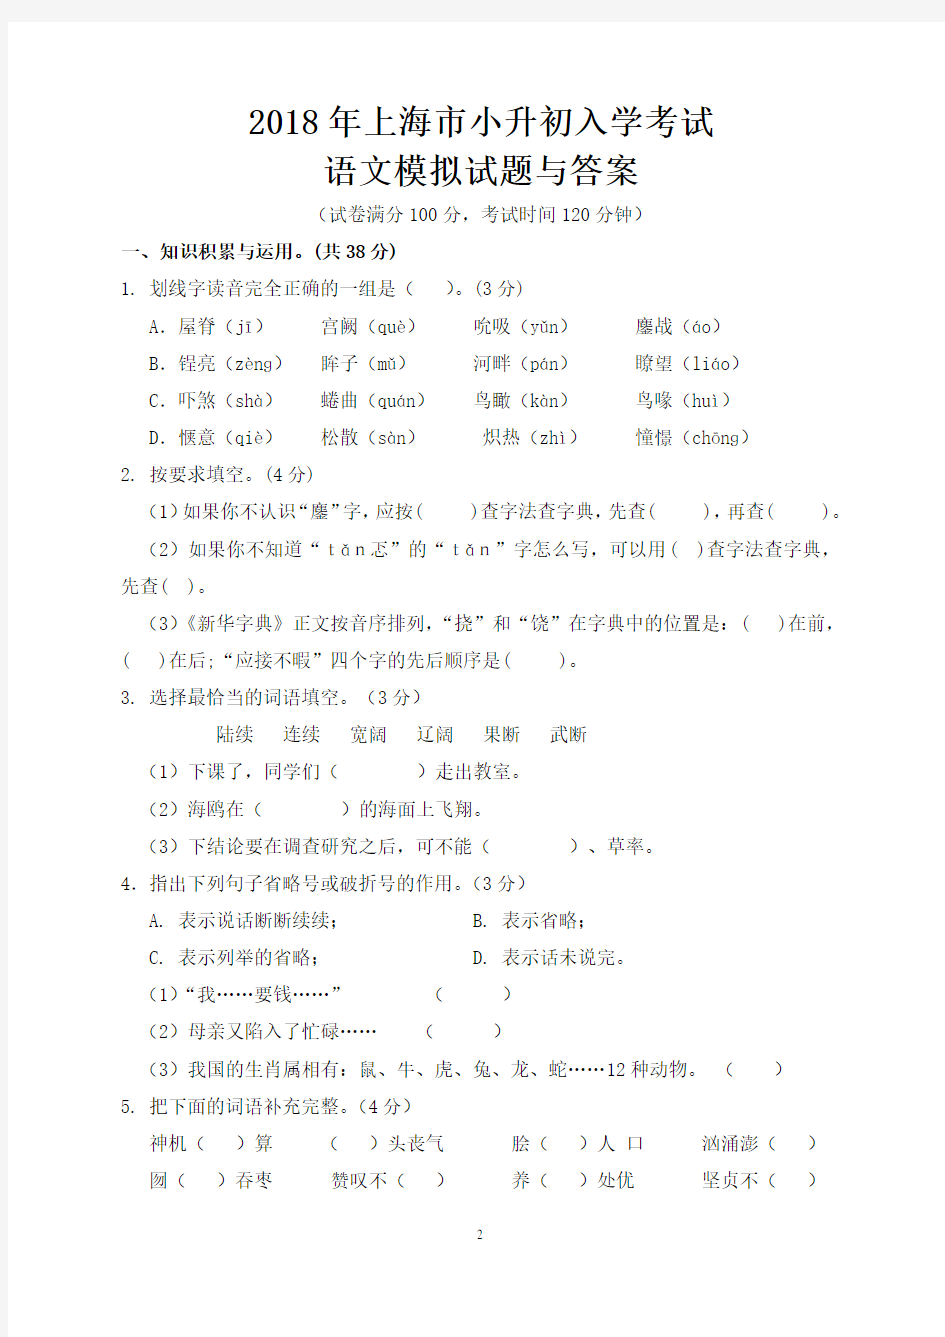 2018年上海市小升初入学考试模拟考试试题与答案汇总(五份)